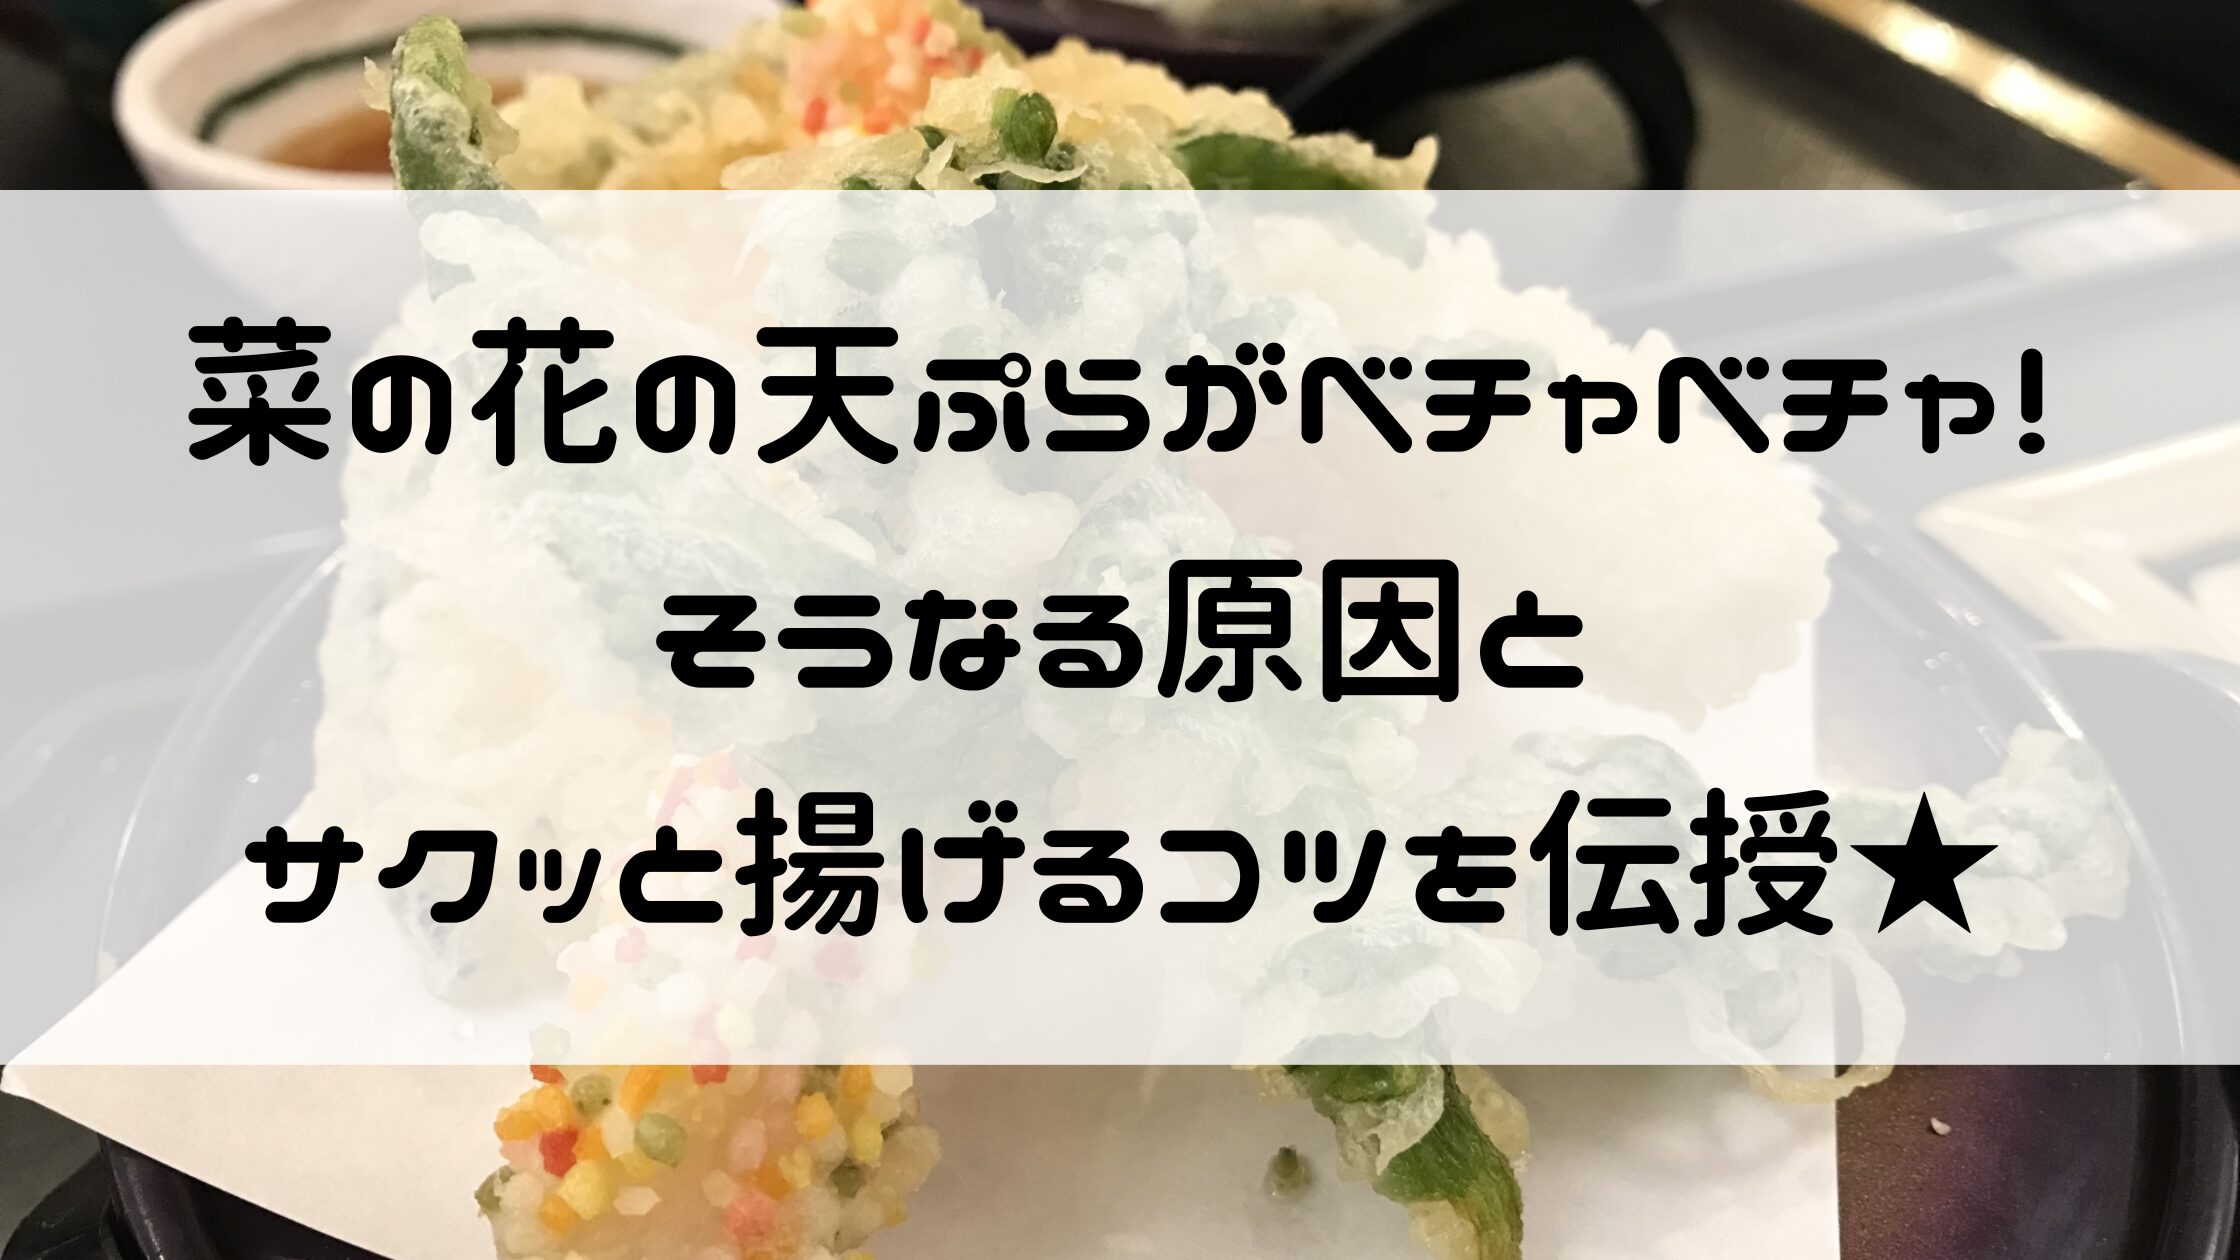 菜の花 天ぷら ベチャベチャ